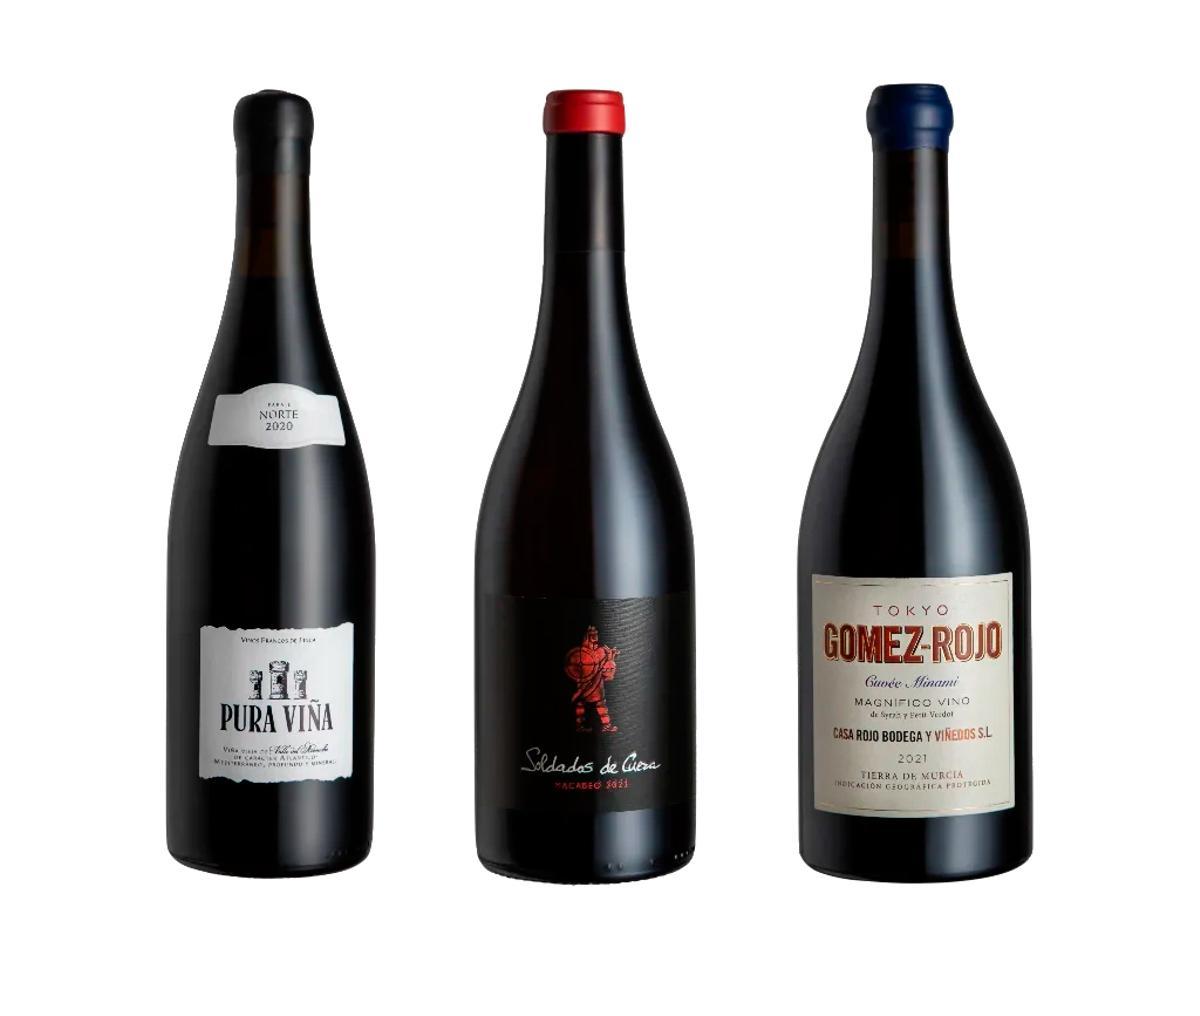 Las tres bodegas que han comenzado esta nueva carta de vinos son Casa Rojo Bodega y Viñedos, Pura Viña y Bodegas Jorge Piernas